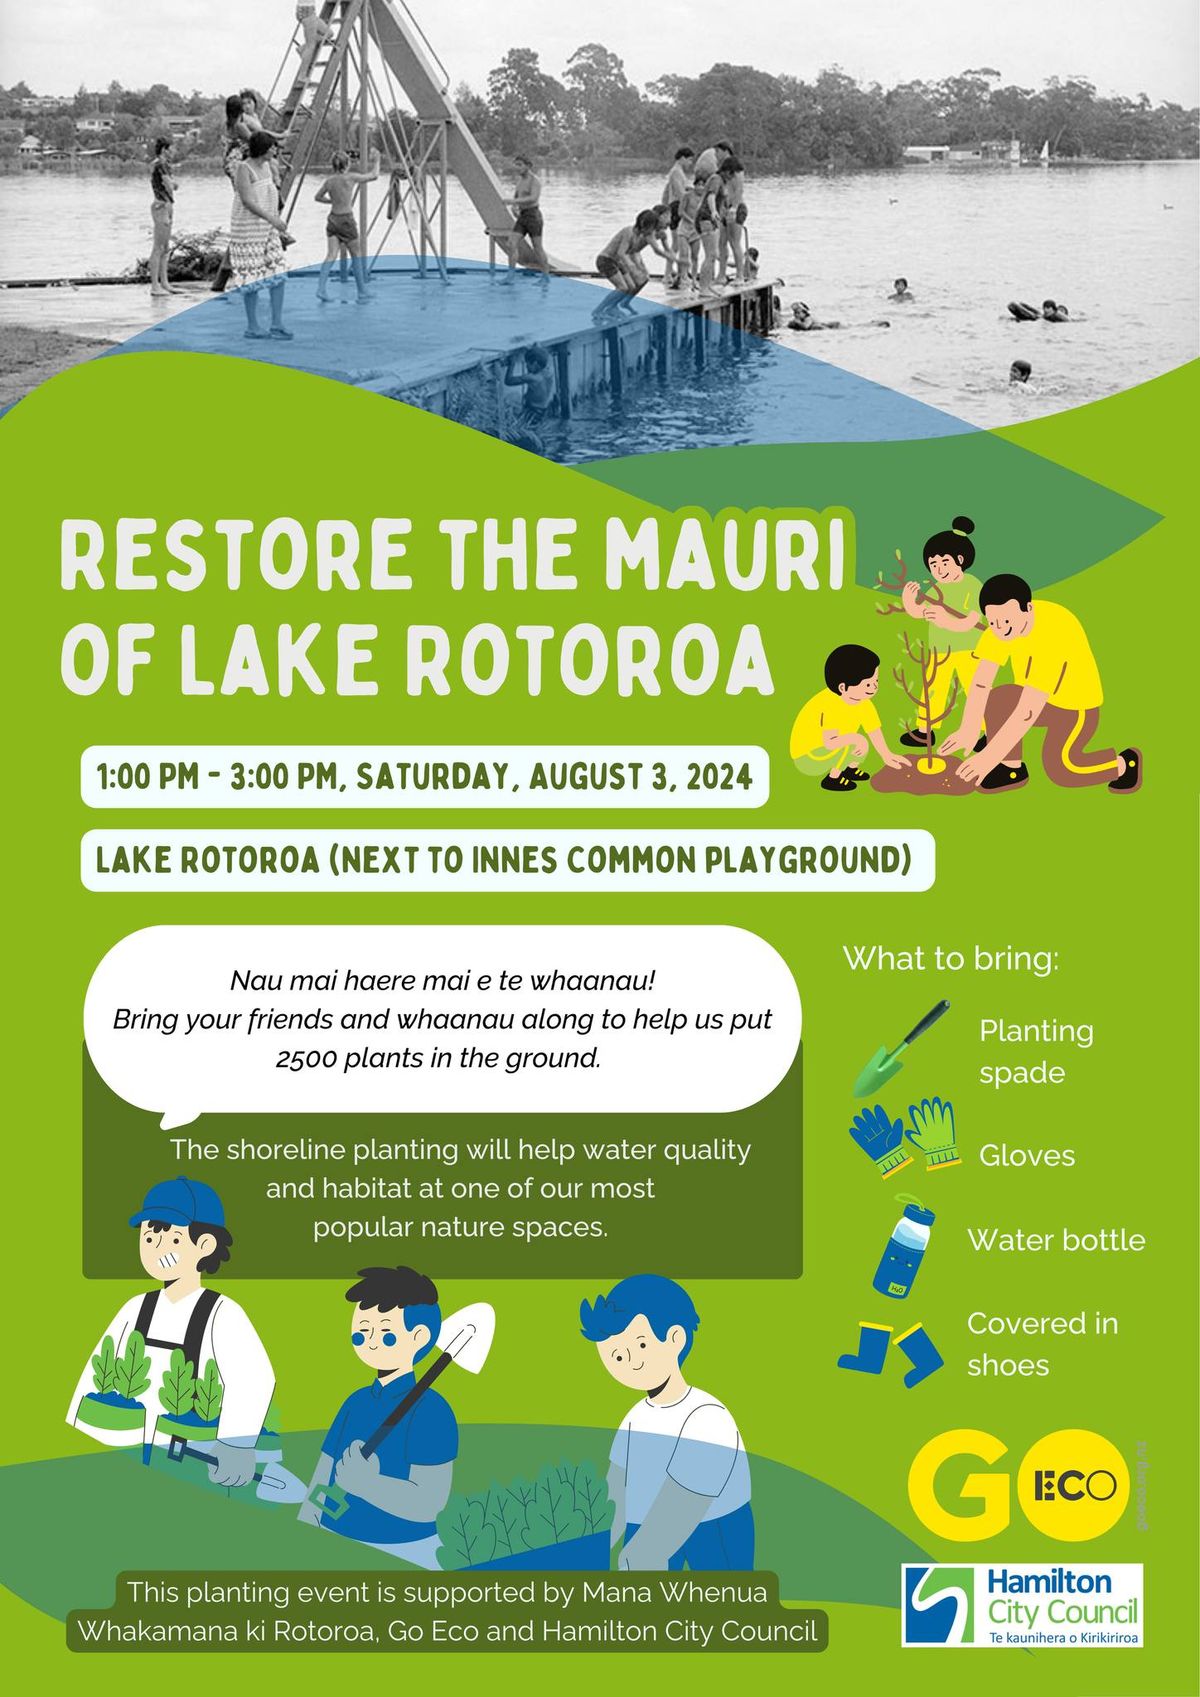 Restore the mauri of Lake Rotoroa